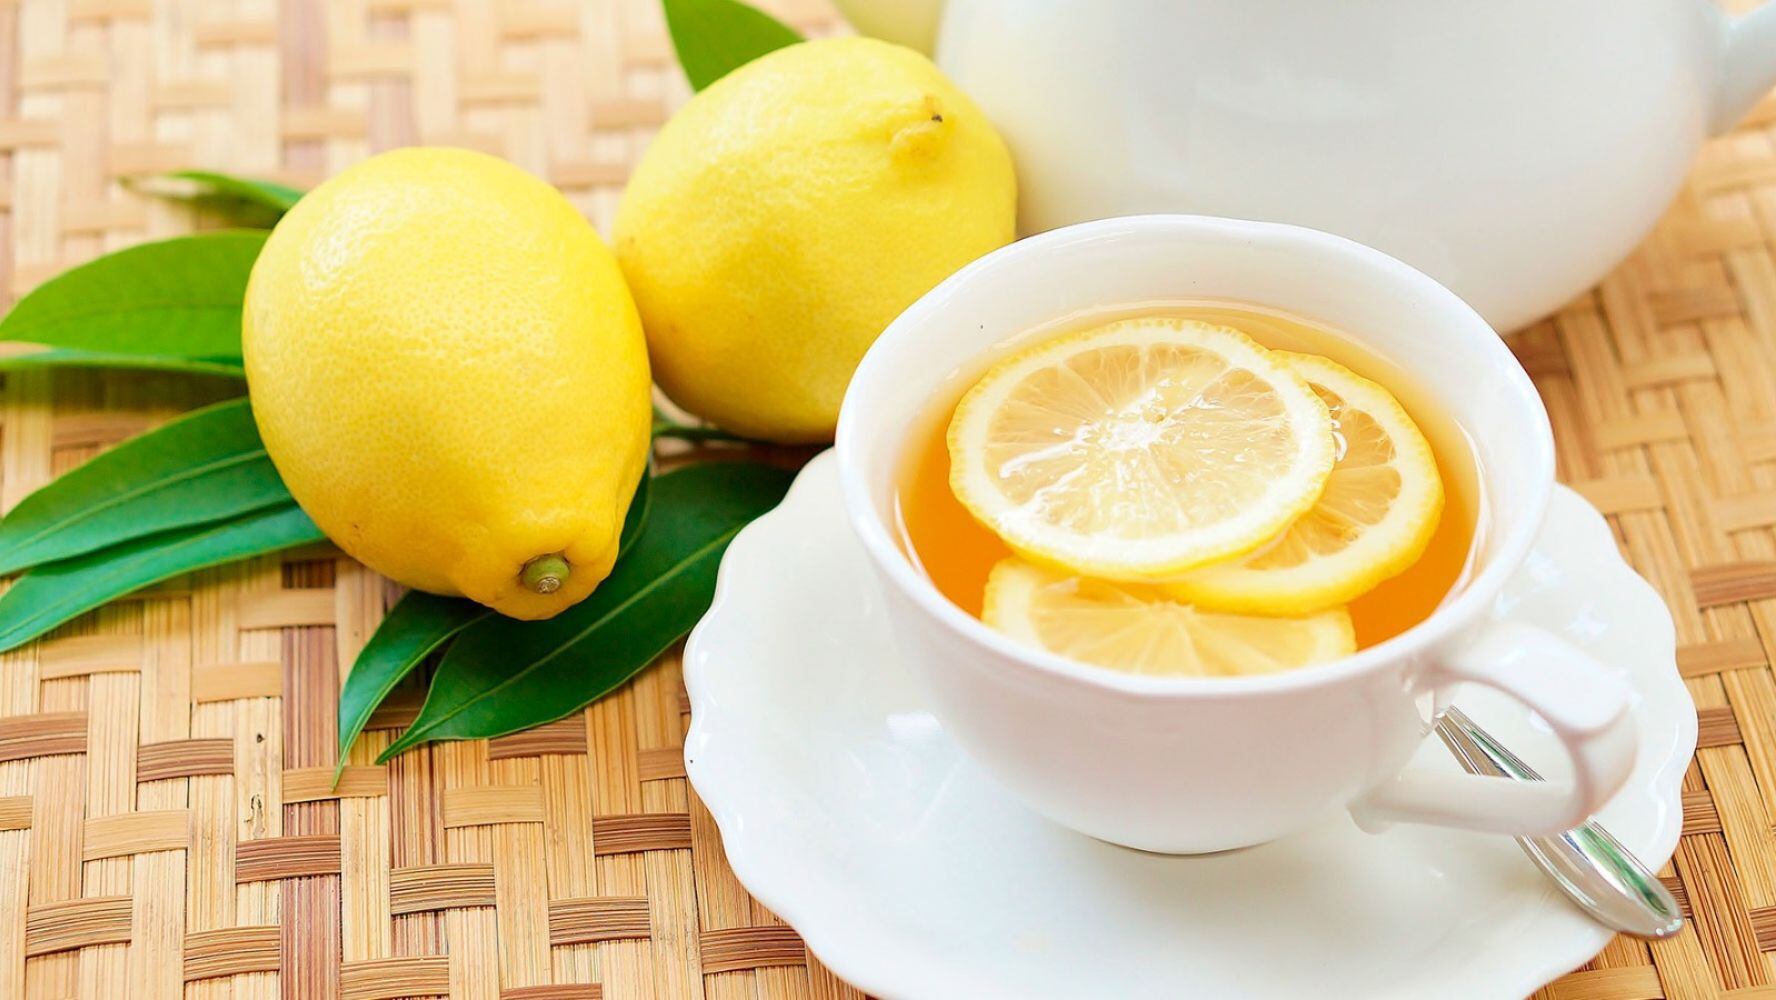 En ciertas ocasiones, el limón acompaña algunas infusiones por sus posibles efectos en la salud. (Foto: Shuttertsock)